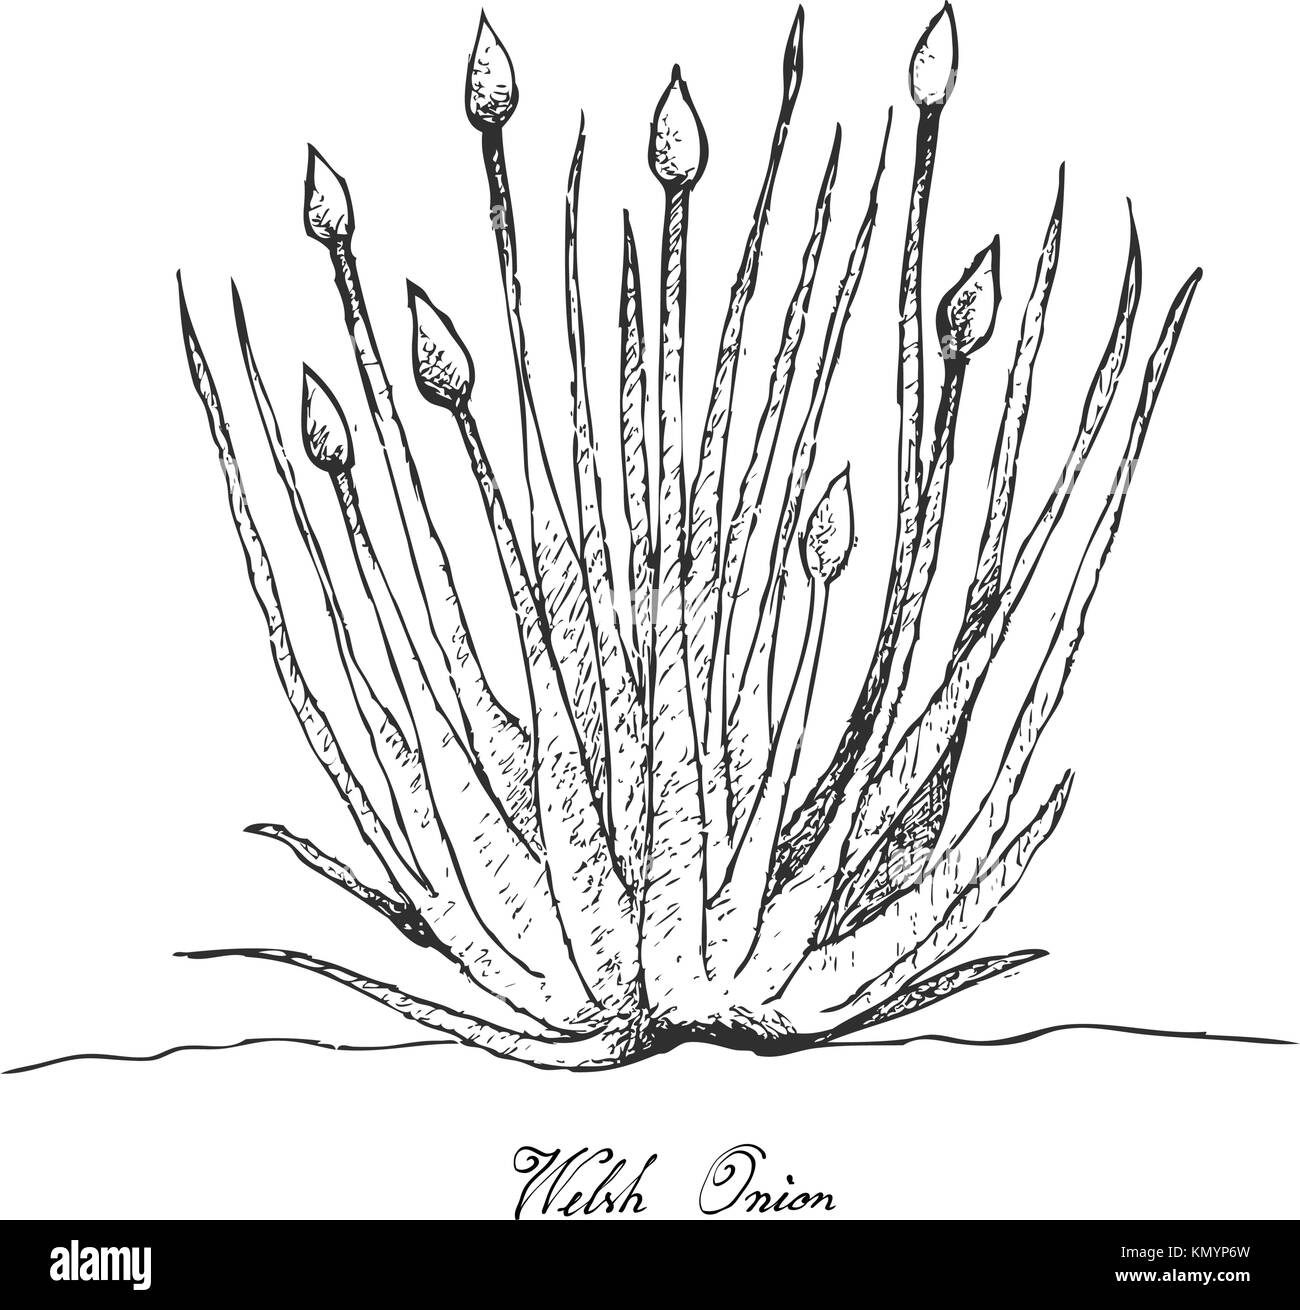 La lampadina e il gambo vegetale, Illustrazione disegnata a mano schizzo fresco cipolla gallese o Allium fistulosum per la stagionatura in cottura. isolato su sfondo bianco. Illustrazione Vettoriale